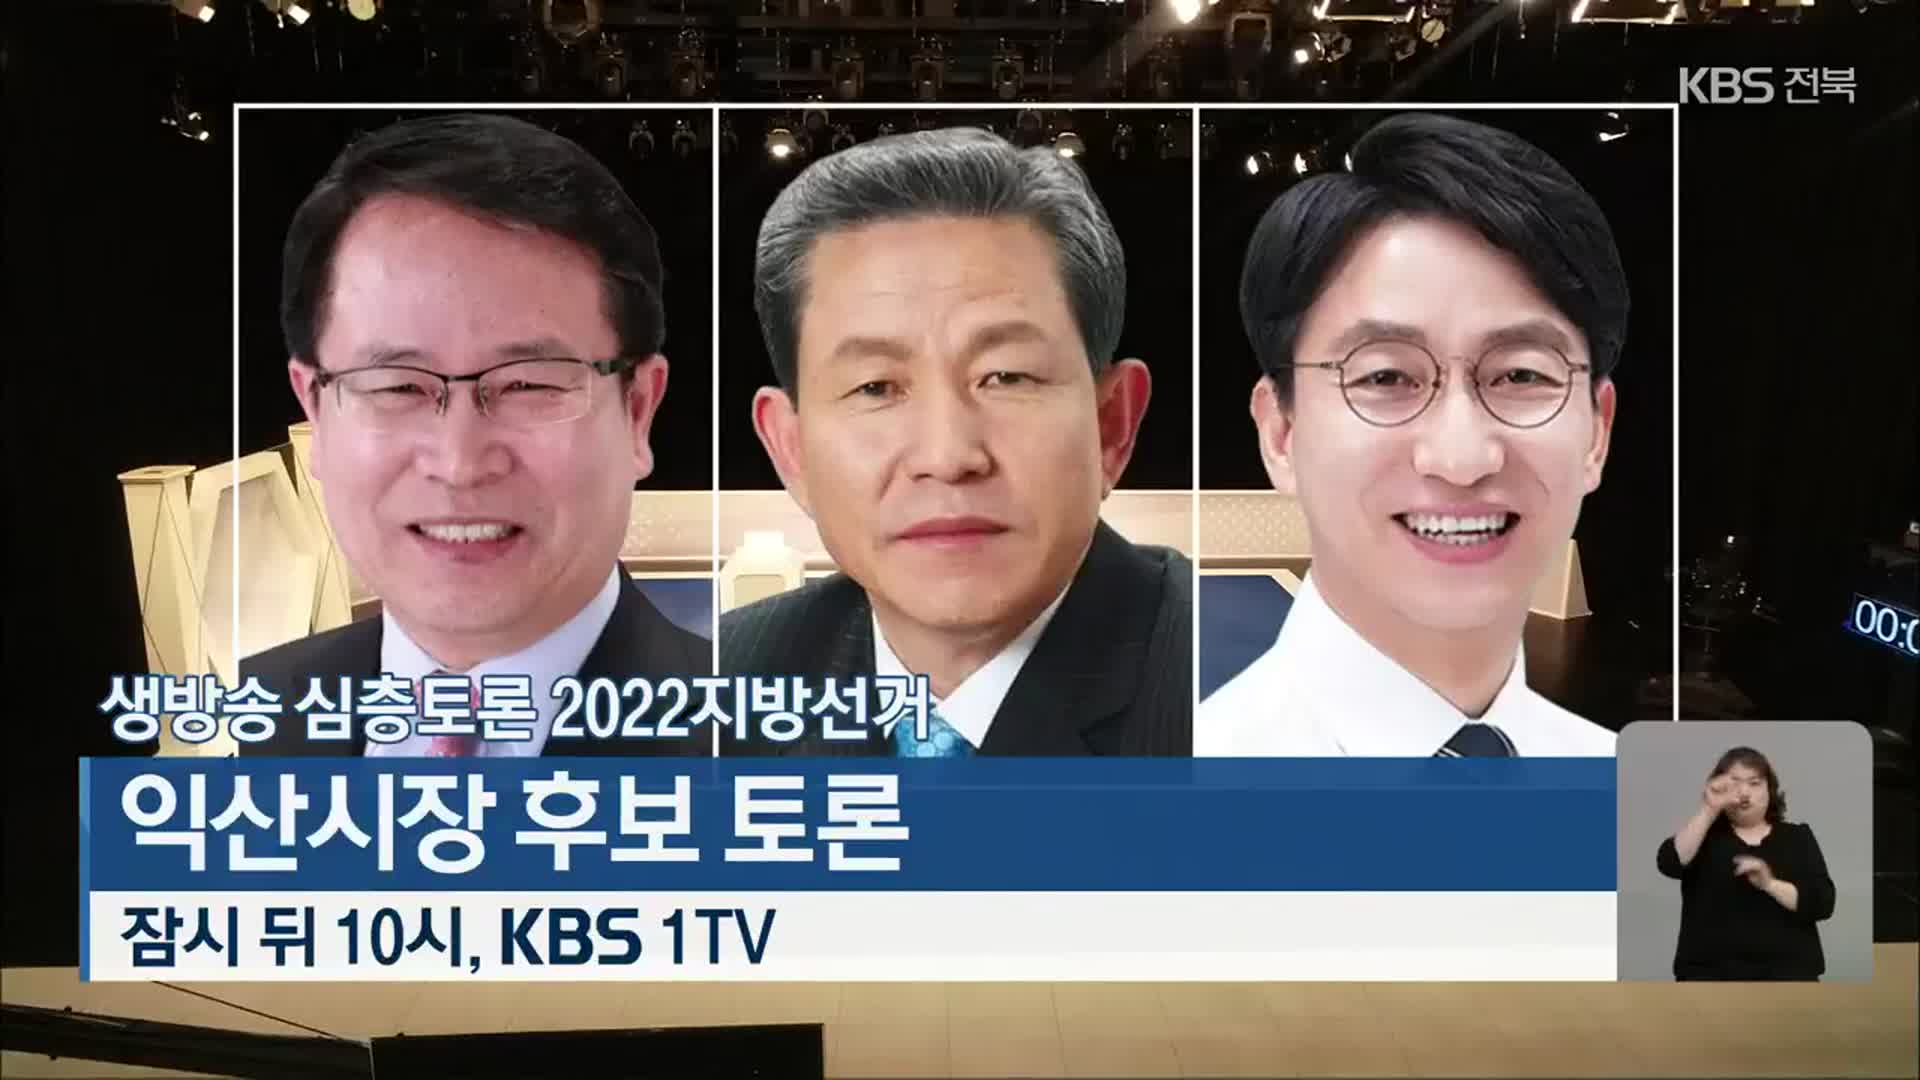 [생방송 심층토론] 2022지방선거 익산시장 후보 토론 오늘 밤 10시 방송